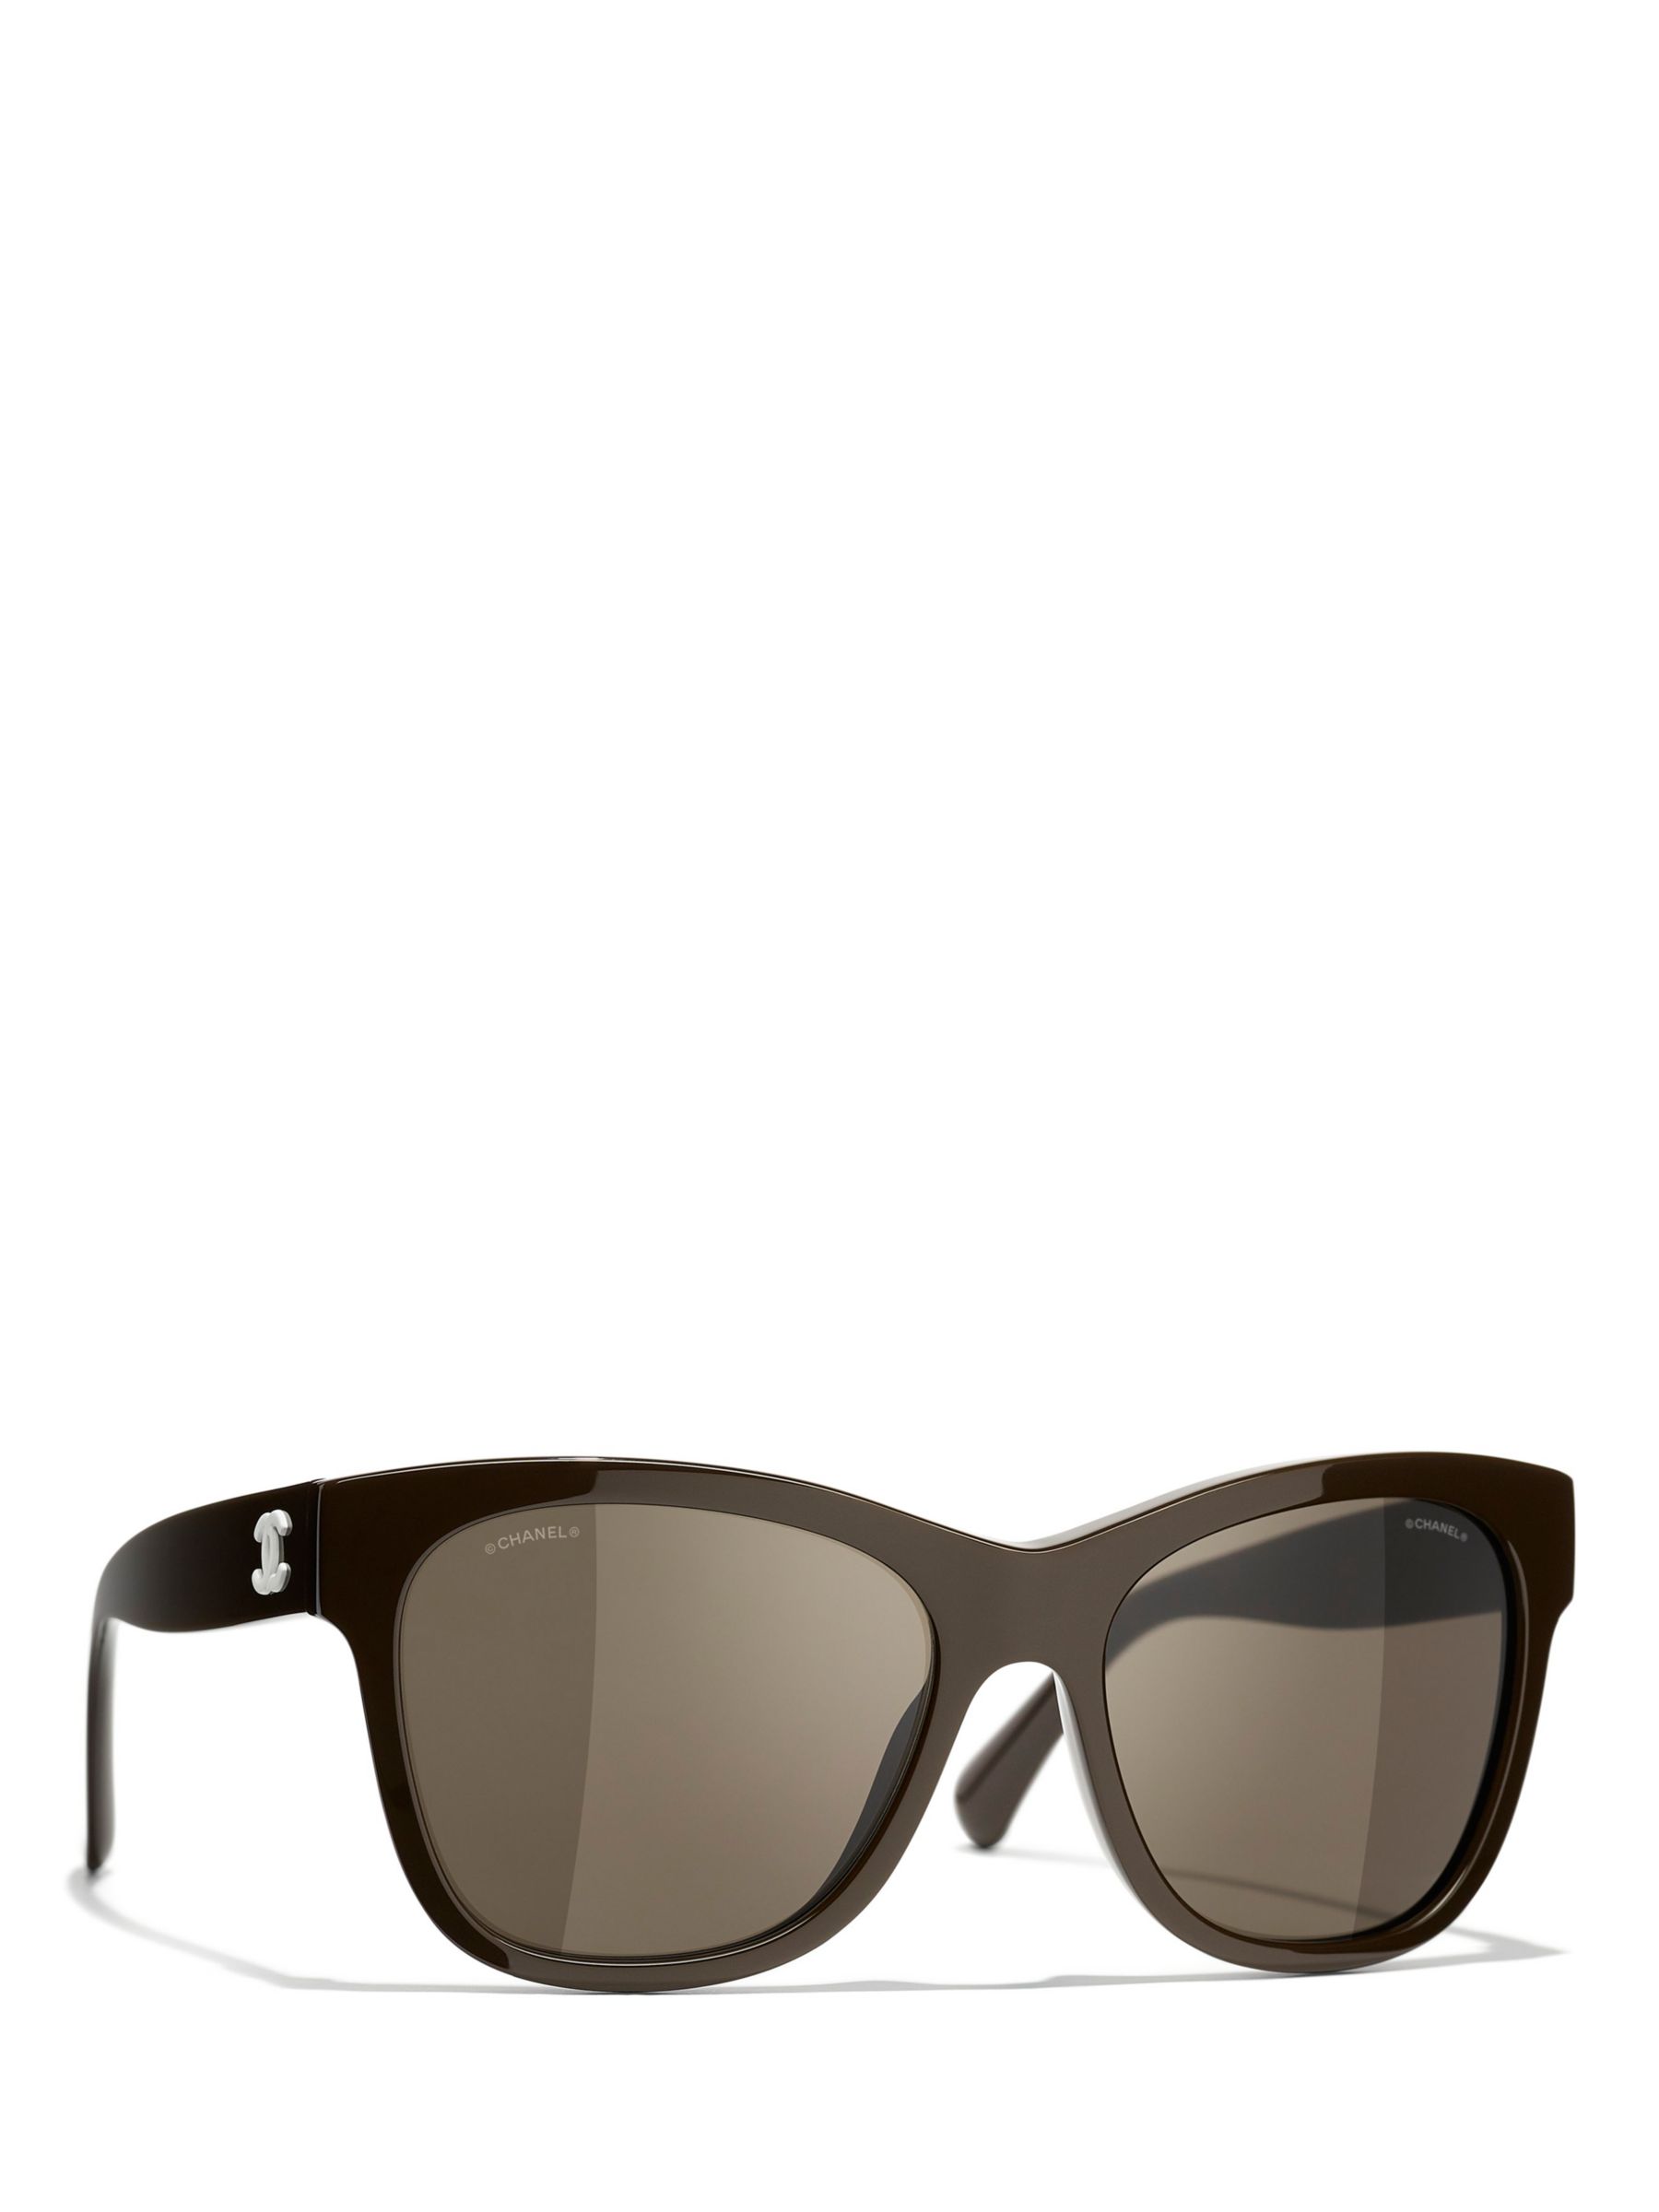 Chanel Square Sunglasses CH5210Q Black/Grey